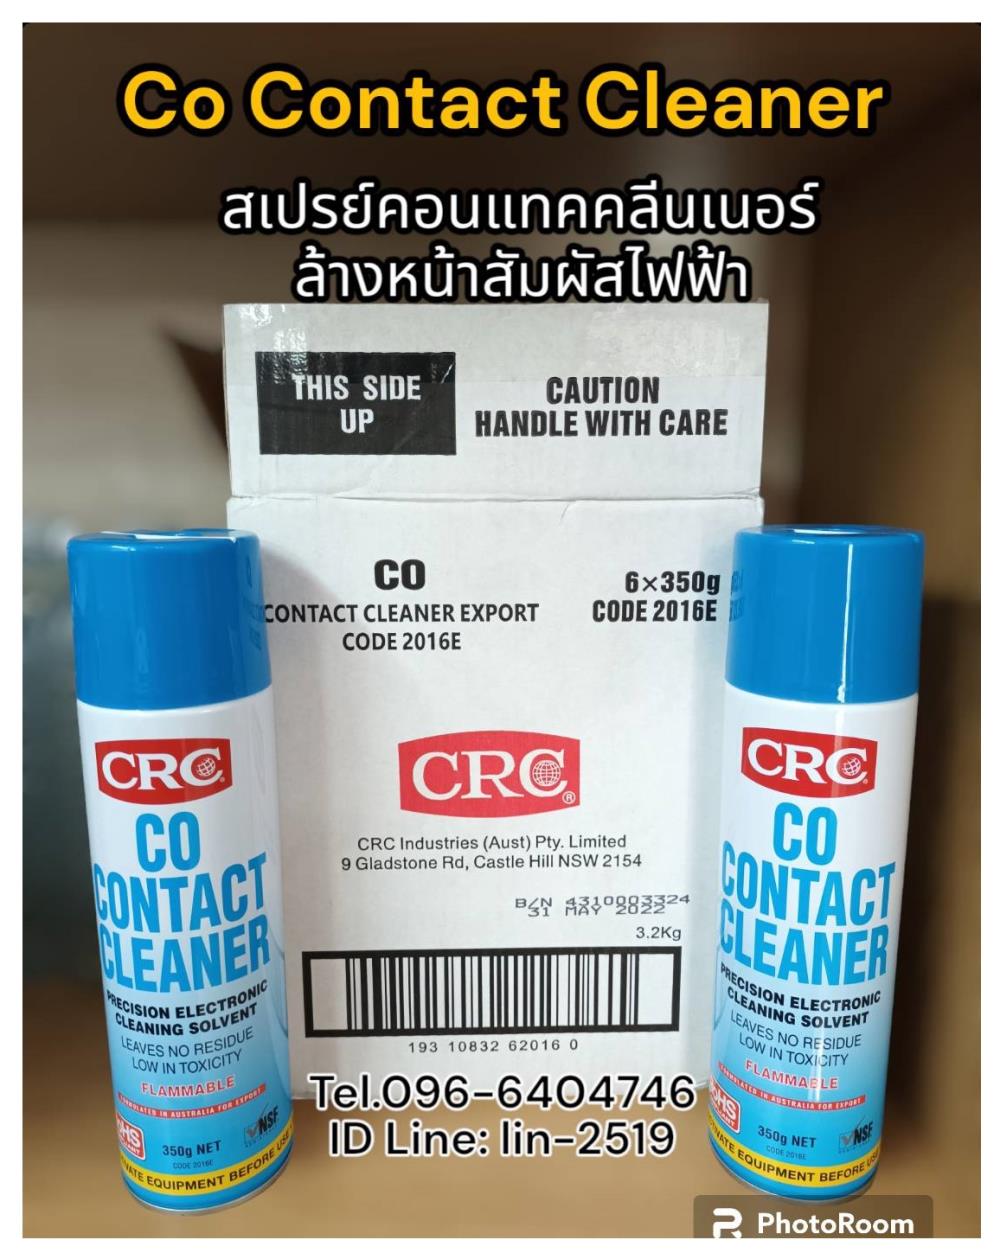 CRC Co Contact Cleaner น้ำยาทำความสะอาดหน้าสัมผัสสำหรับอุปกรณ์ไฟฟ้า, วงจรอิเล็คโทรนิค และชิ้นส่วนไฟฟ้าชนิดระเหยแห้ง ,CRC co Contact Cleaner, Contact Cleaner, สเปรย์คอนแทคคลีนเนอร์, น้ำยาทำความสะอาดหน้าสัมผัสไฟฟ้า, ทำความสะอาดแผงวงจร, ไฟฟ้า, อิเล็คทรอนิคส์, ล้างหน้าสัมผัสไฟฟ้า, ขจัดฝุ่น,,CRC,Chemicals/Removers and Solvents